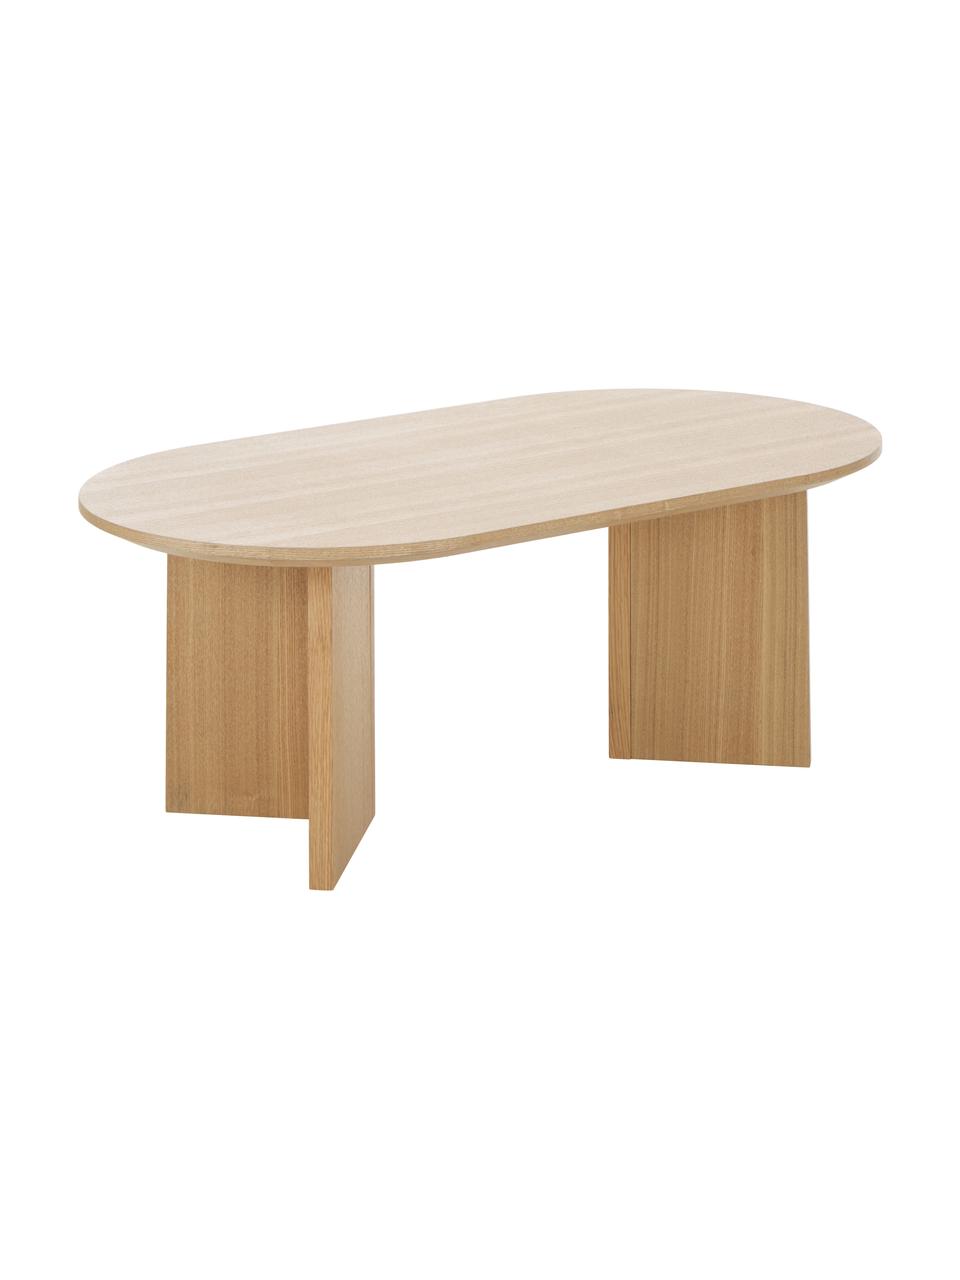 Ovale salontafel Toni van hout, MDF met gelakt essenhoutfineer, Bruin, B 100 cm x H 35 cm